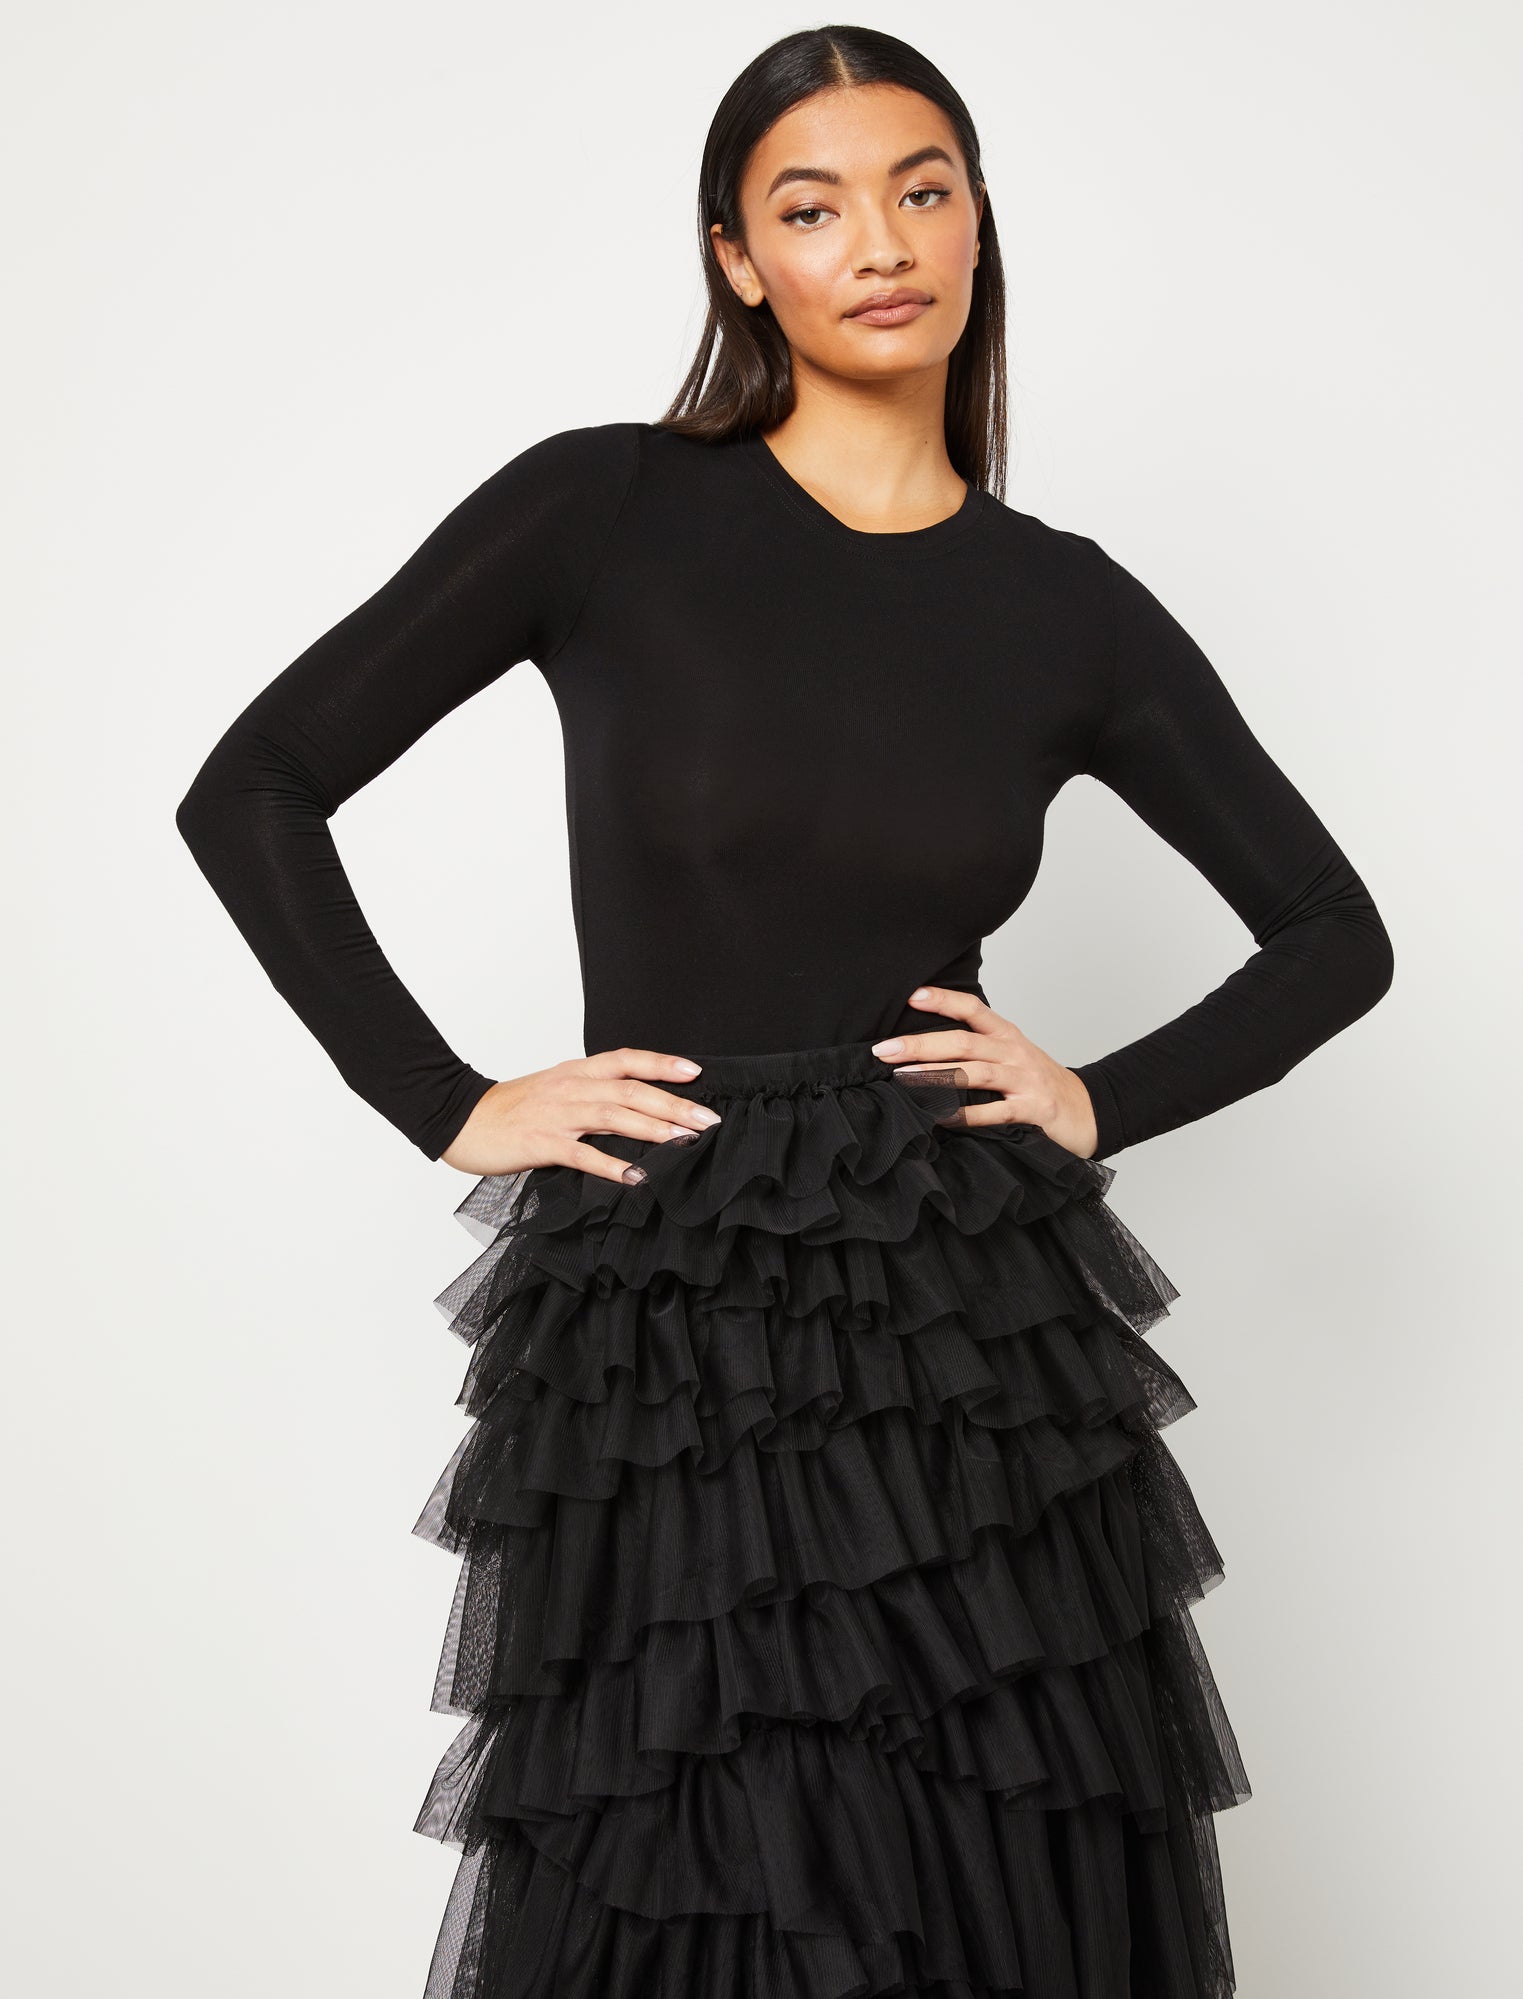 black tulle skirt layered